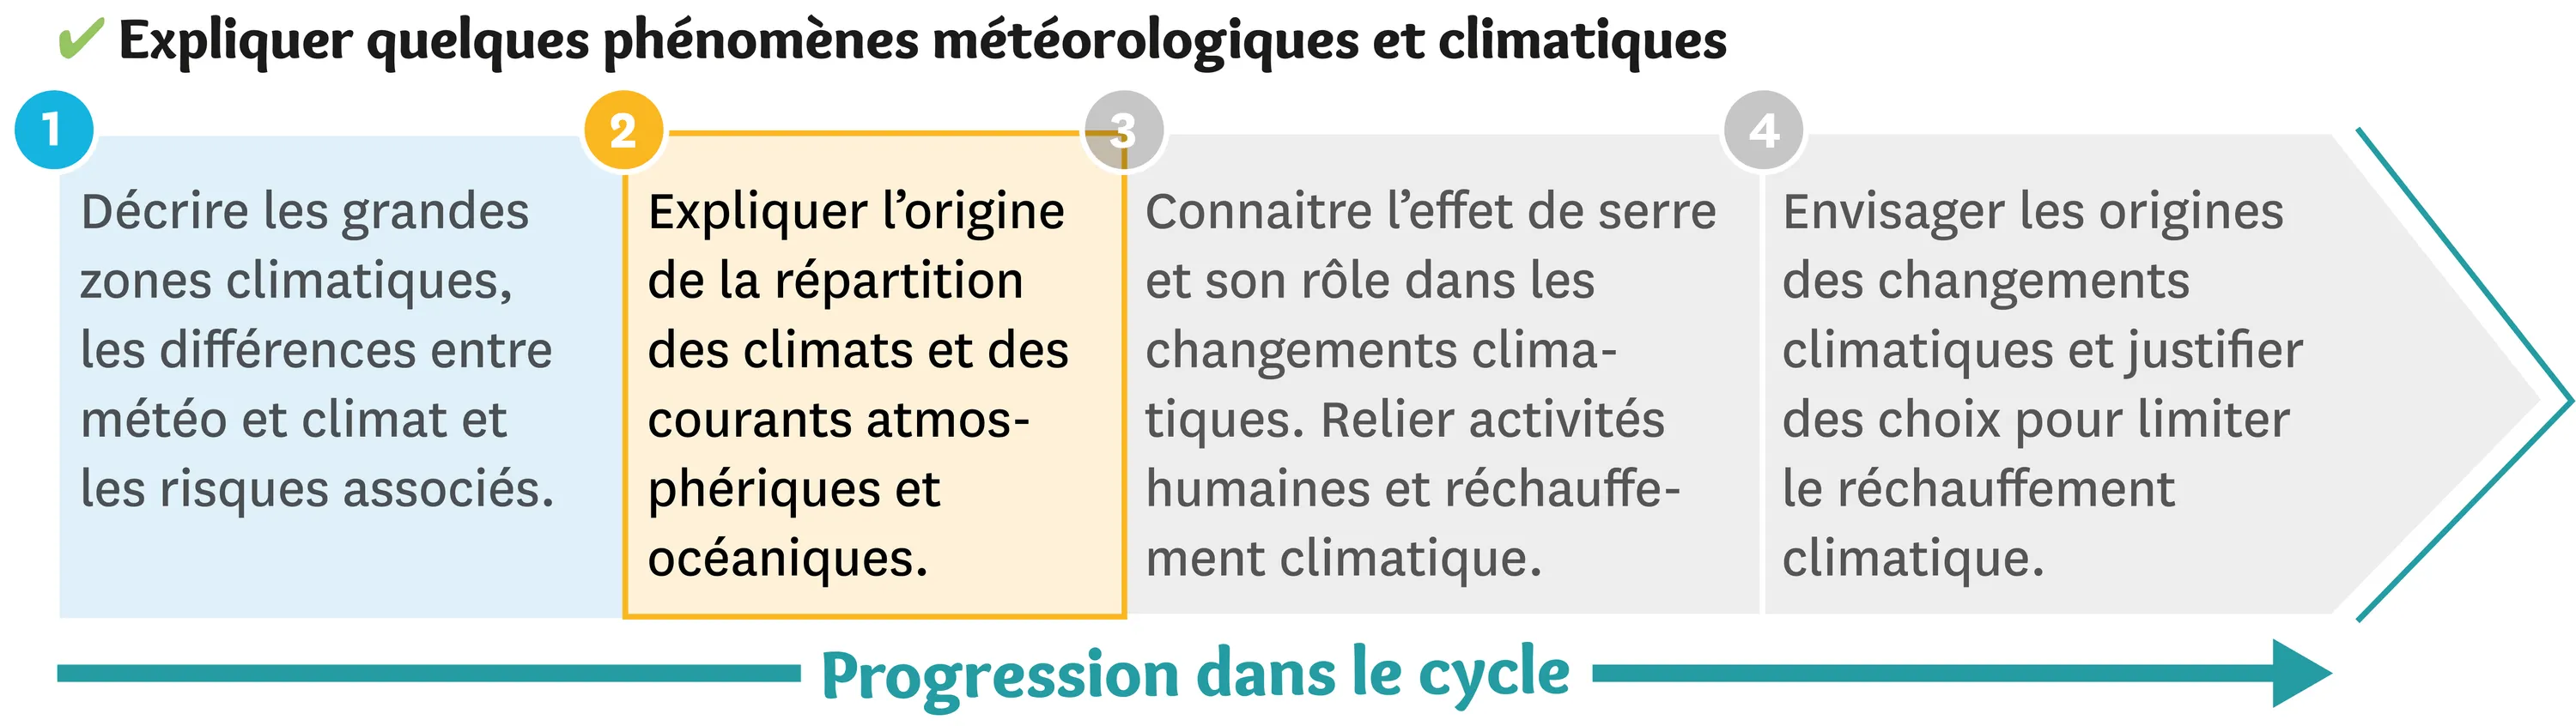 Illustration de la progression dans le cycle des phénomènes météologiques et climatiques